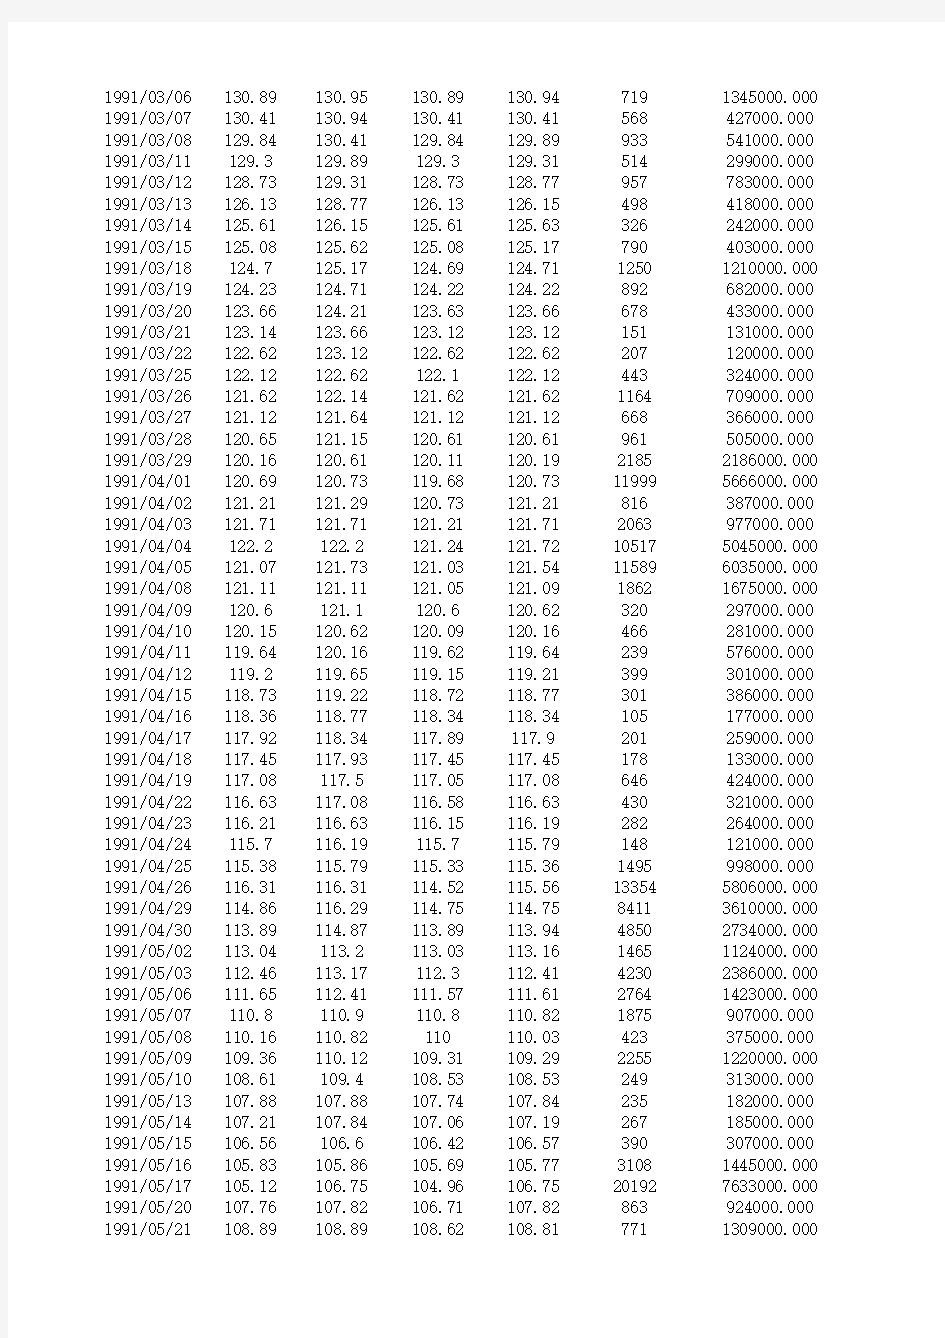 上证指数历史数据(1990年1月-2015年4月)